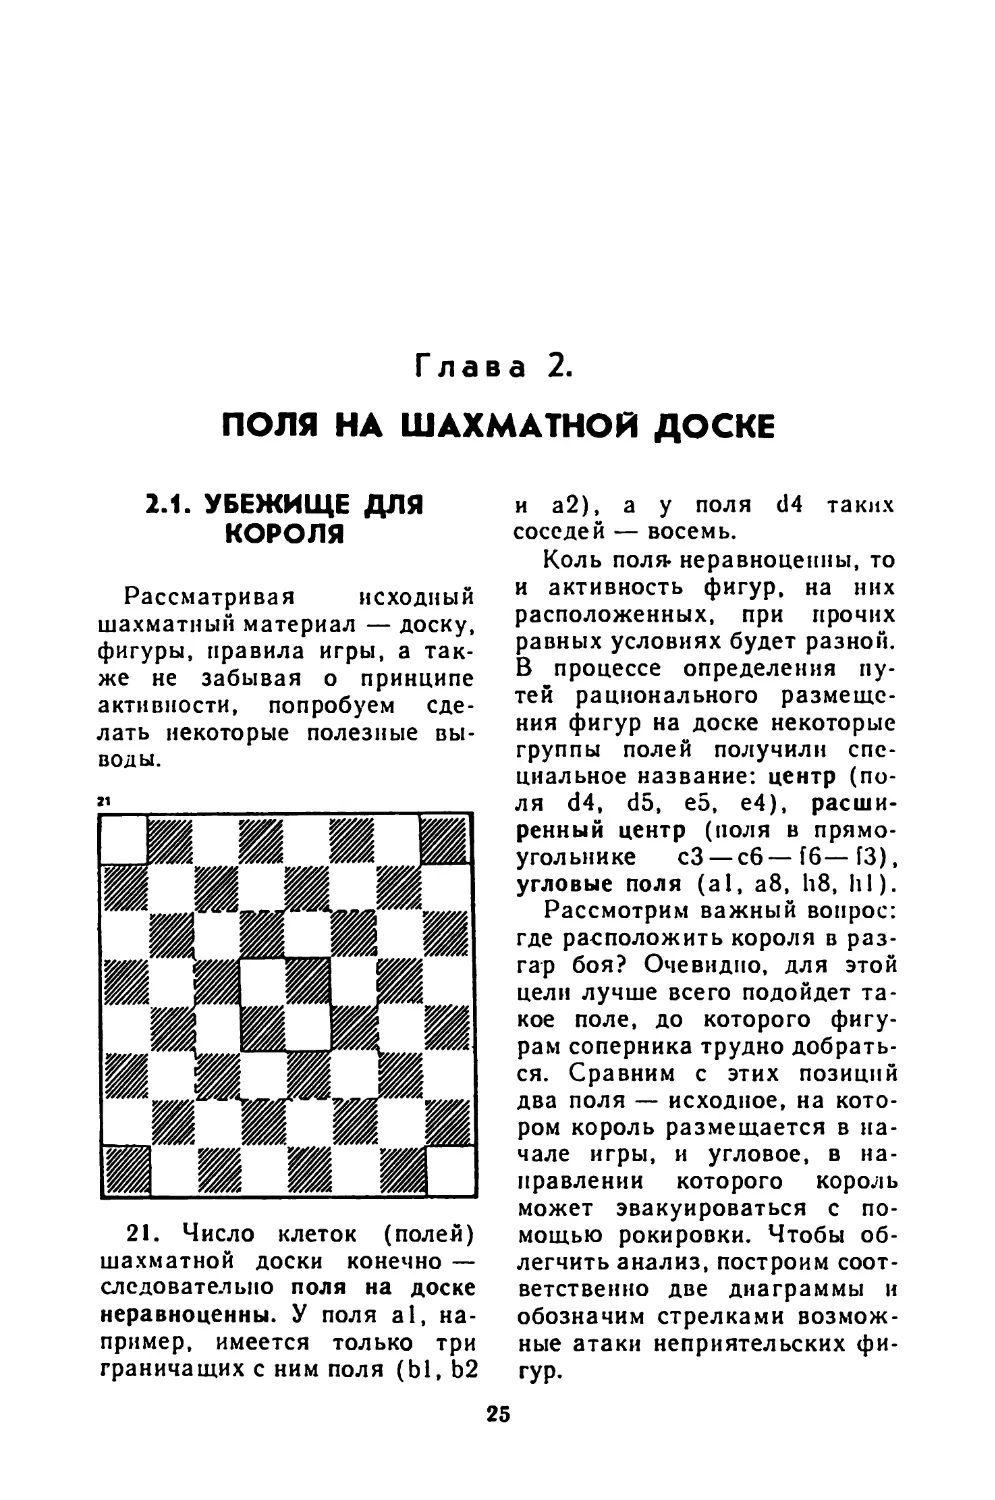 Глава II Поля на шахматной доске